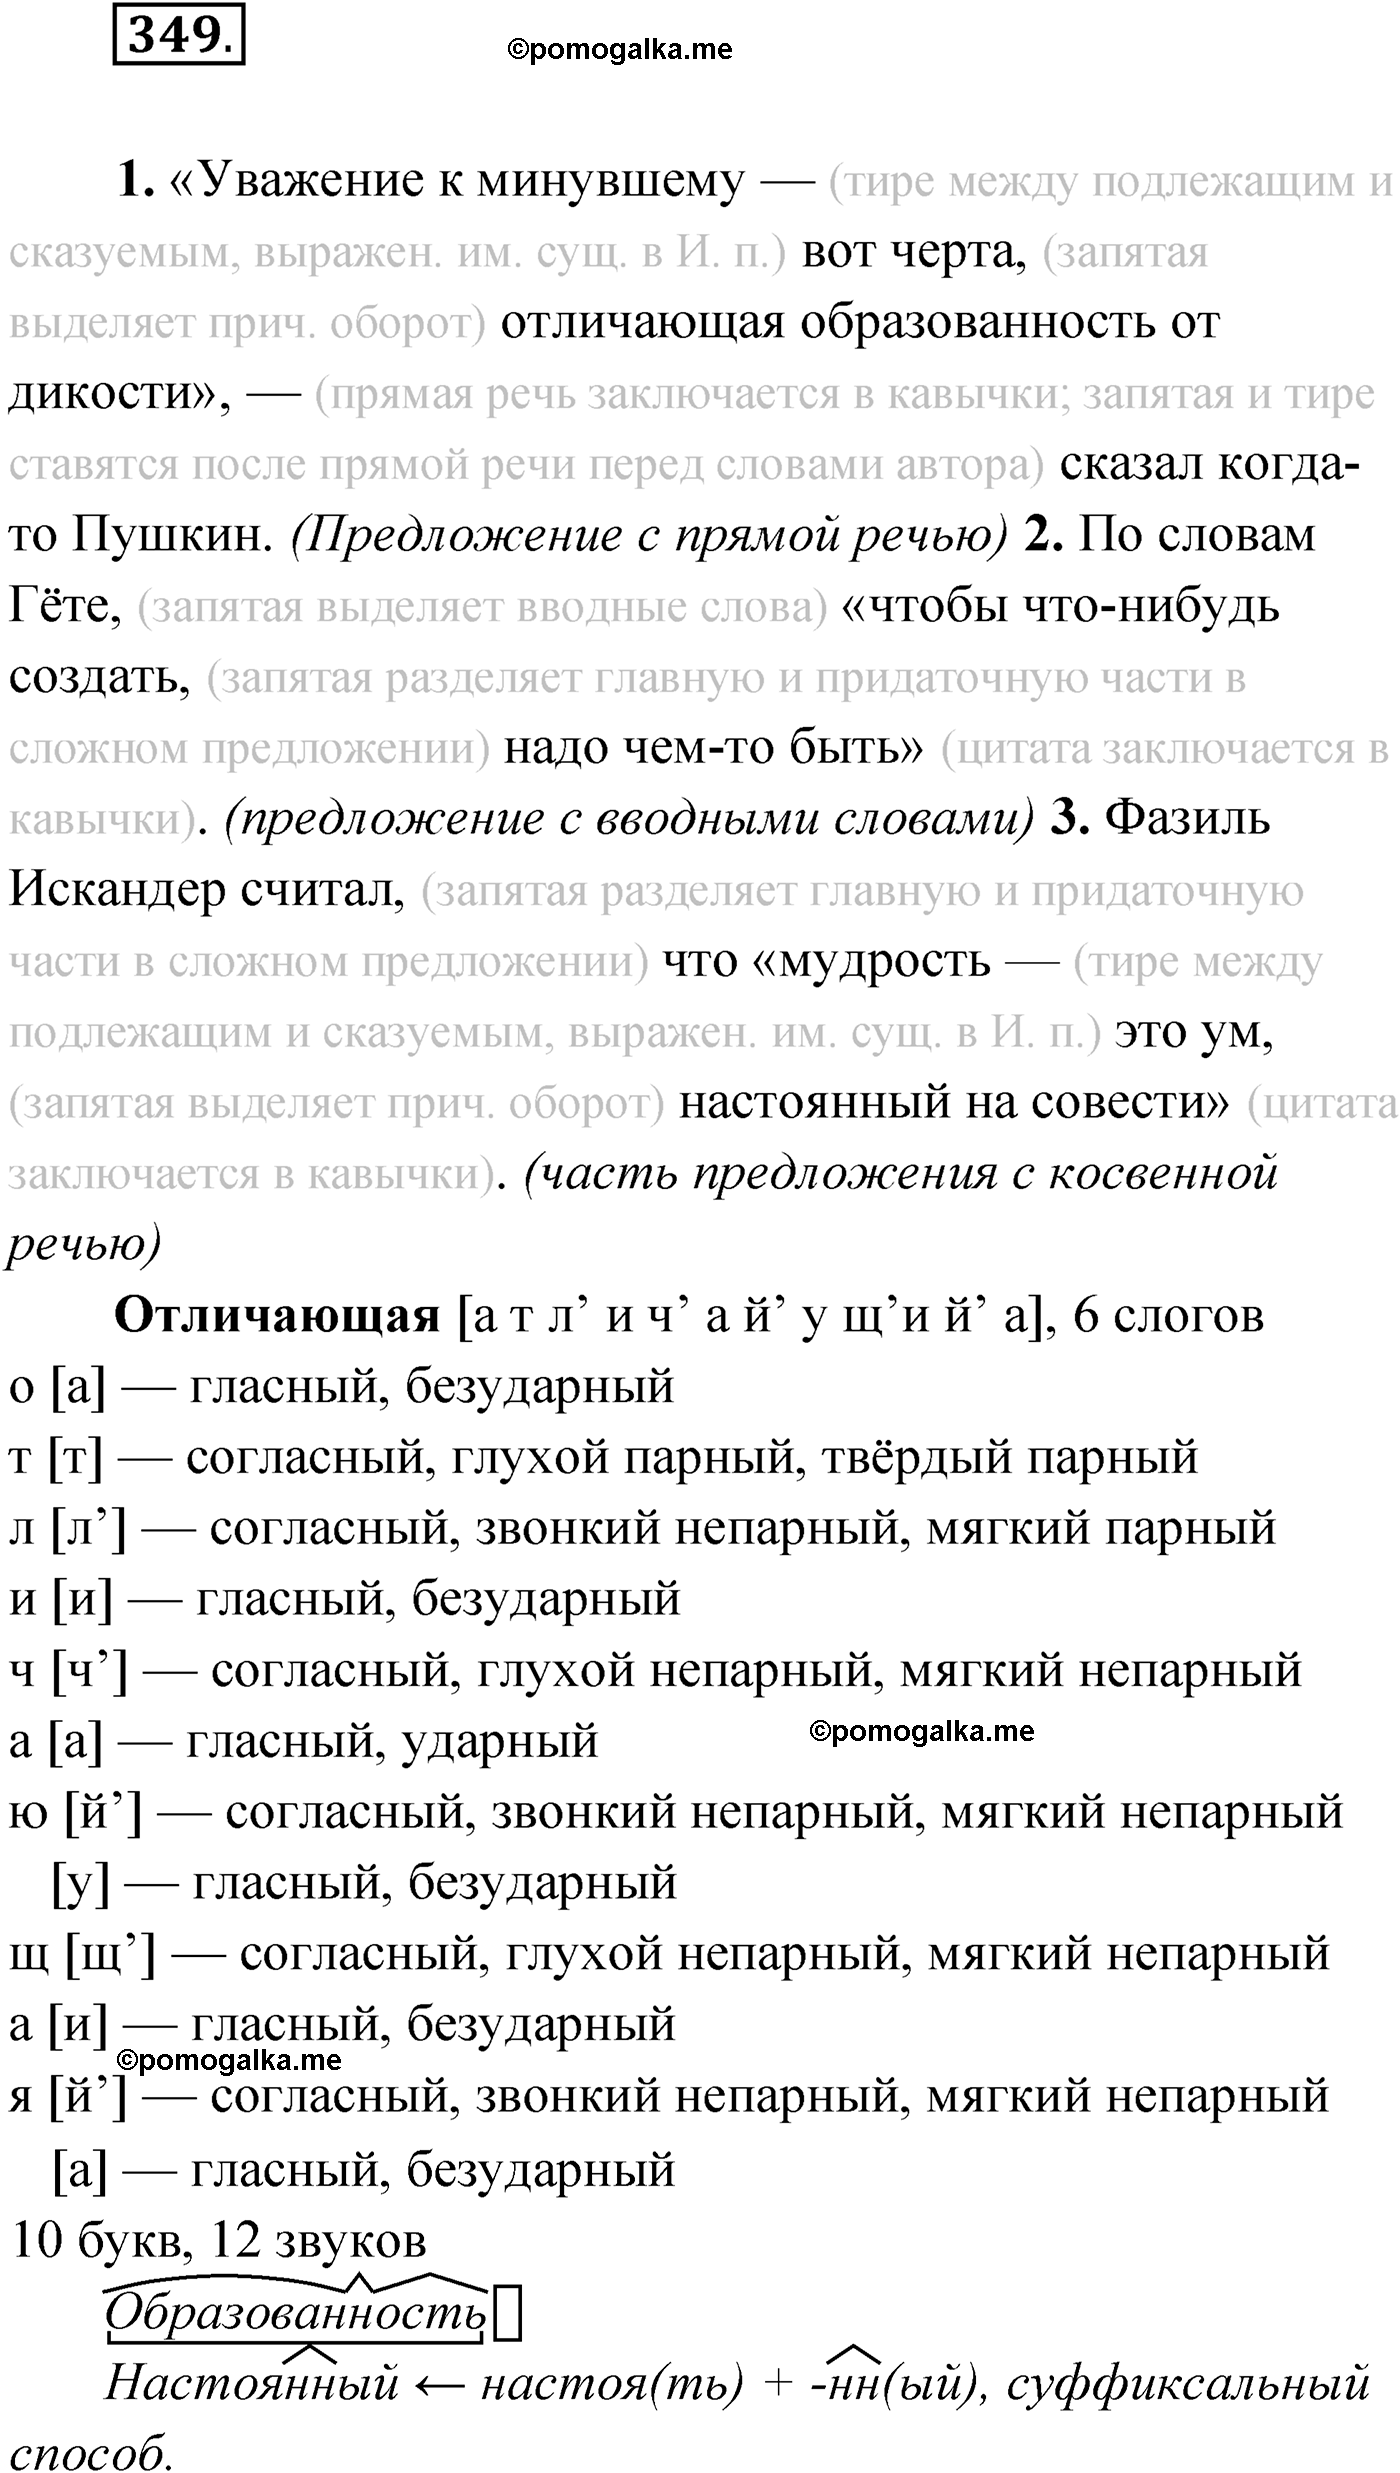 упражнение №349 русский язык 9 класс Мурина 2019 год